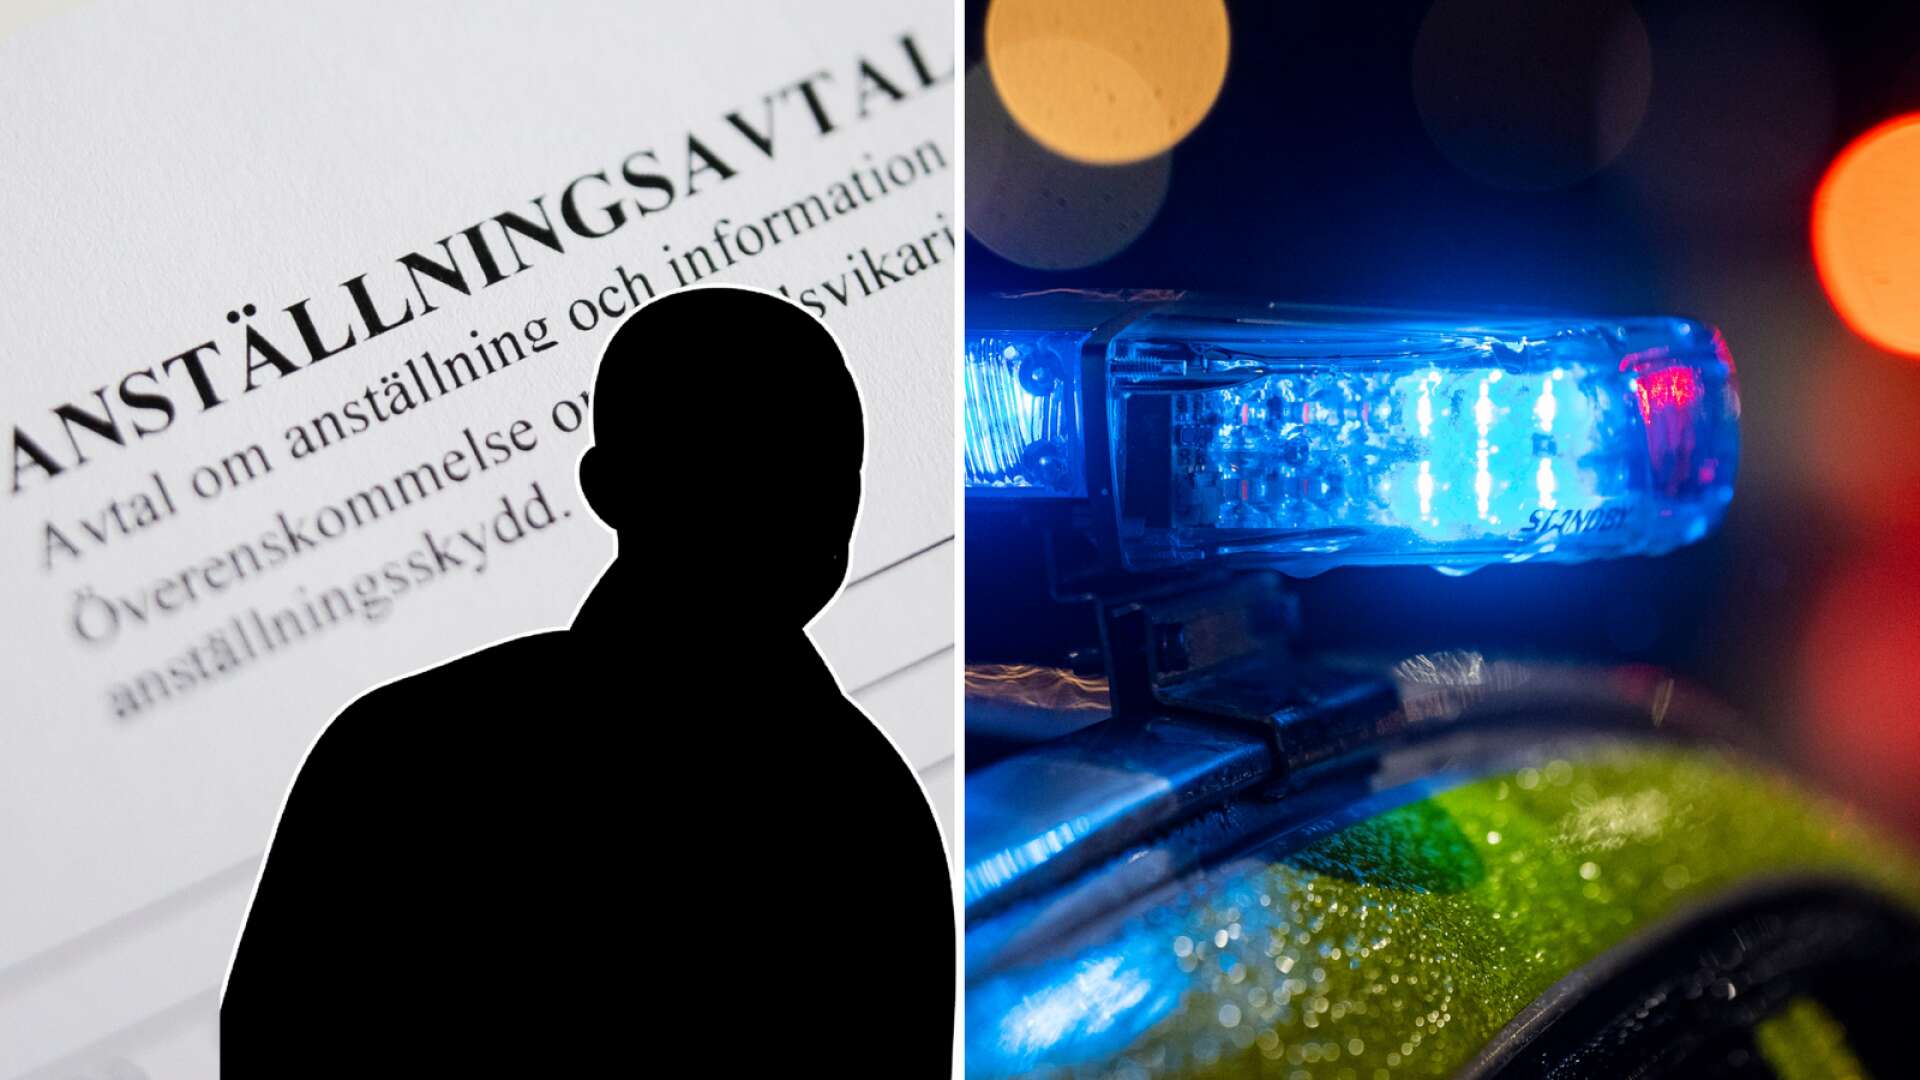 Åtalas misstänkt för brott mot utlänningslagen • Verksam i Sunne kommun